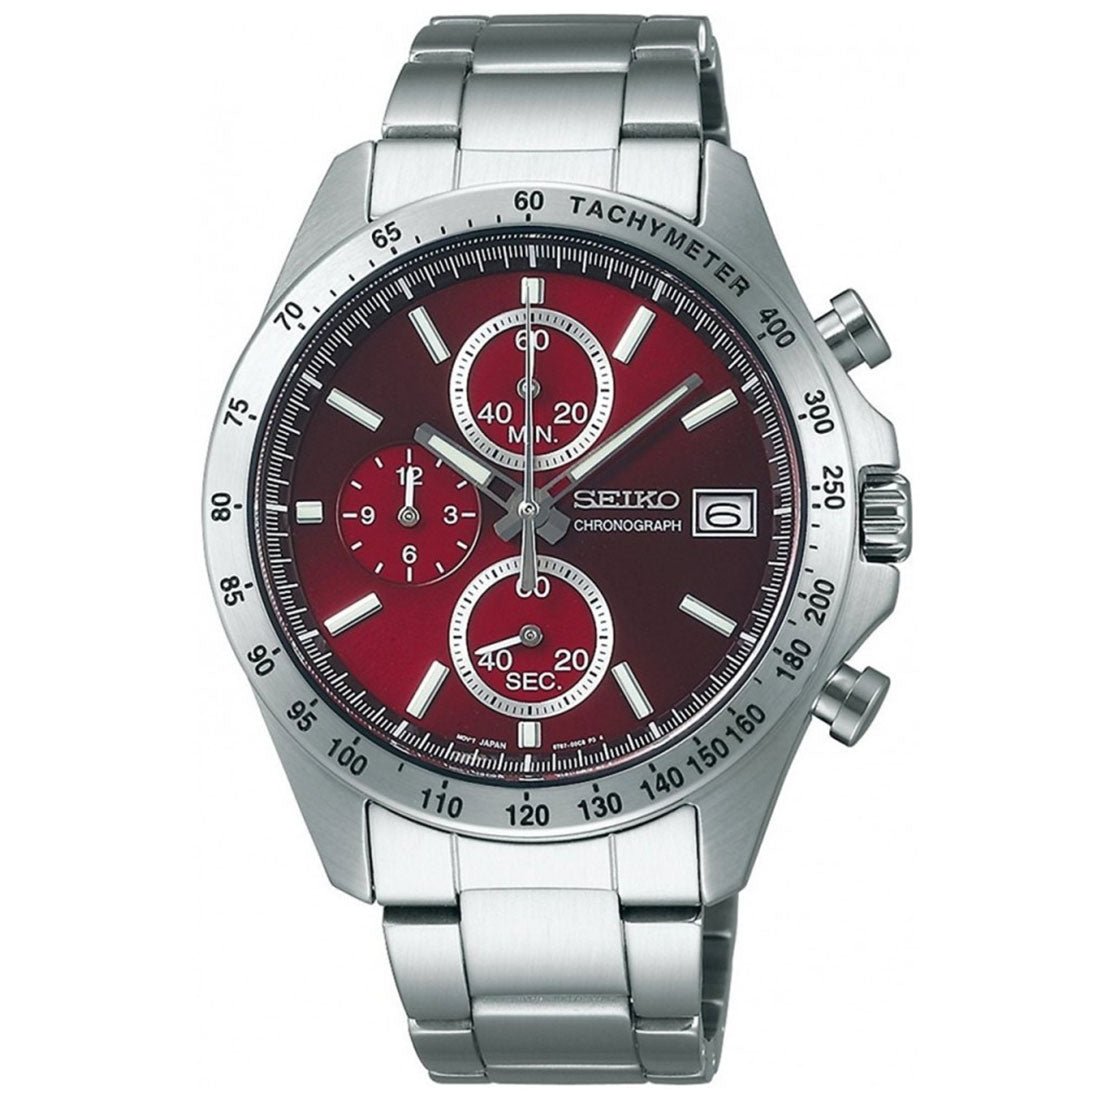 Seiko Spirit SBTR001 JDM Selection Red Dial Chronograph Quartz Stainless Steel Watch -Seiko